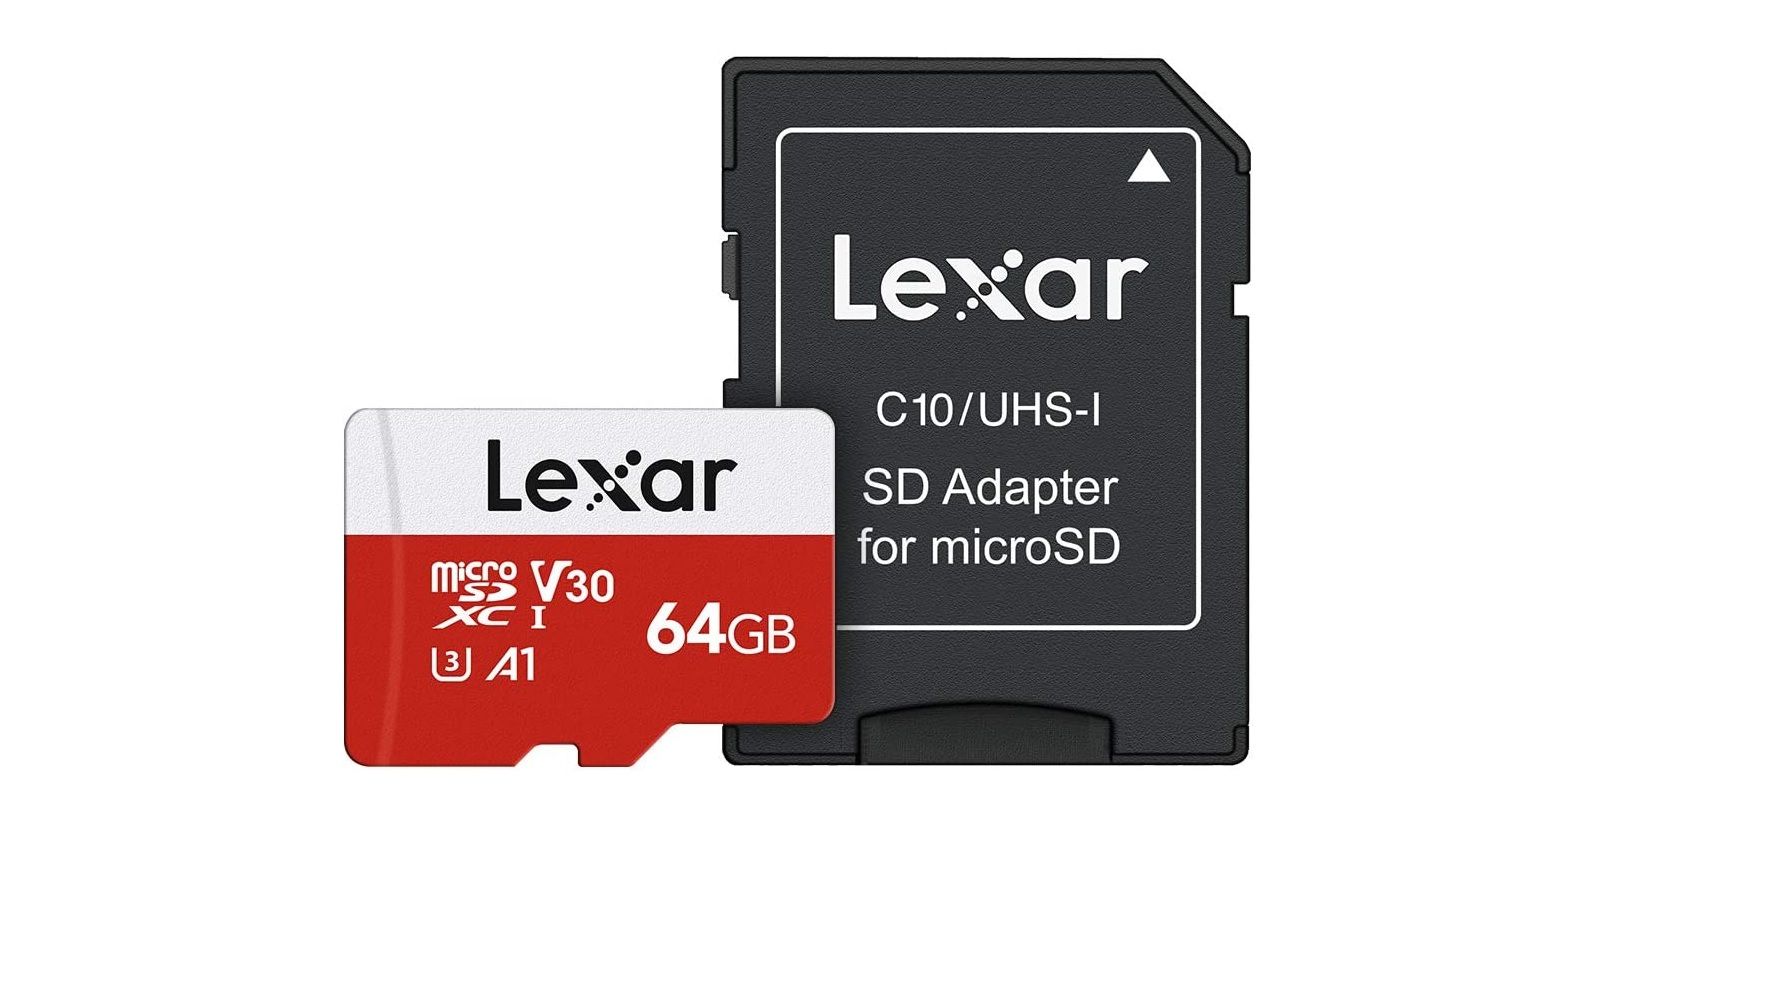 lexar 64gb microsd card alongside an sd card adapter